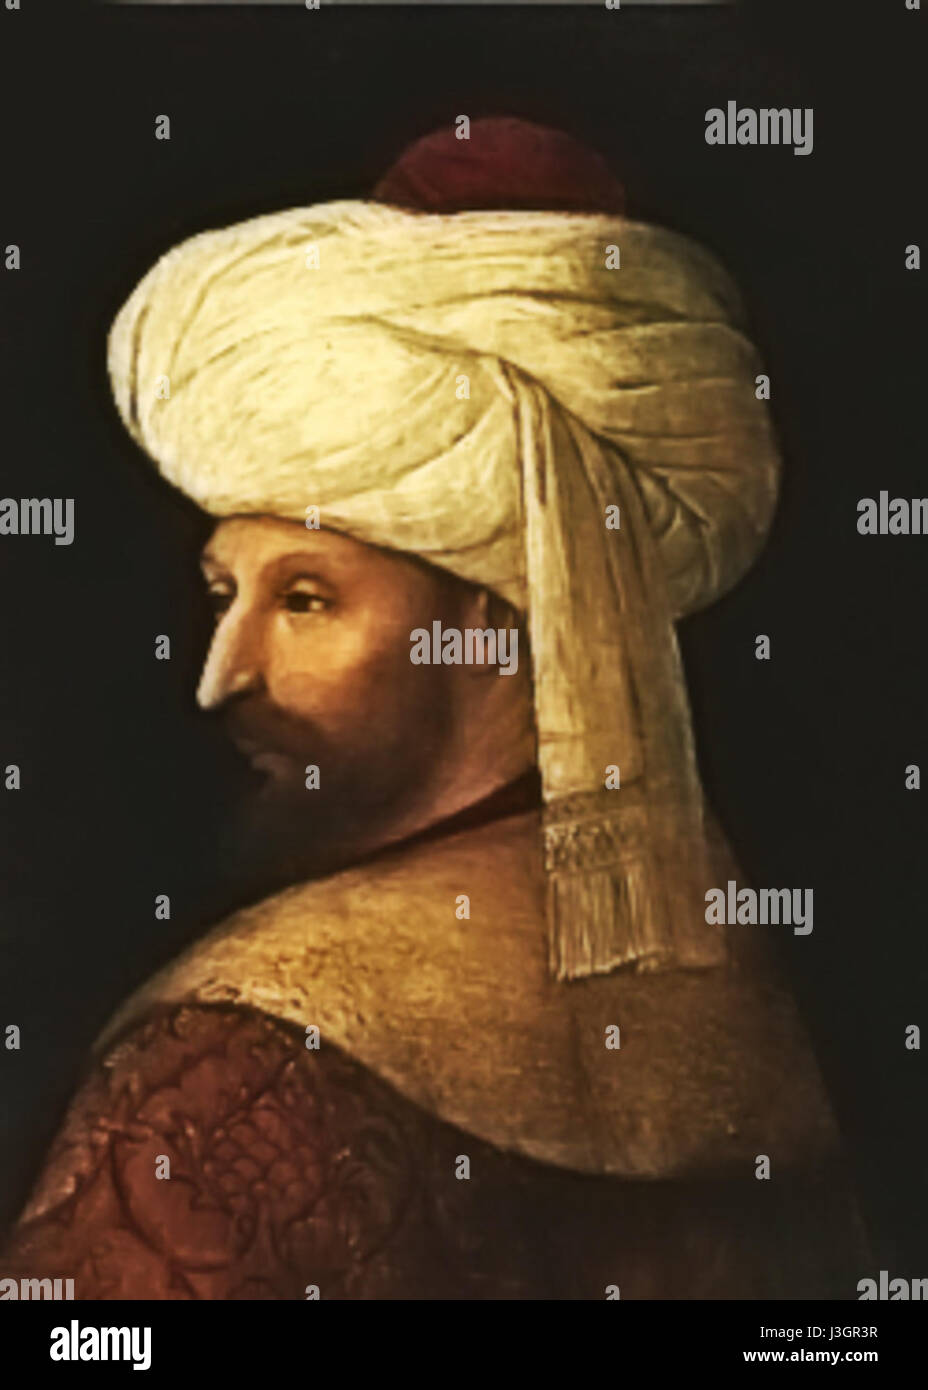 Fatih Sultan Mehmet Alternatif Portre Stock Photo - Alamy